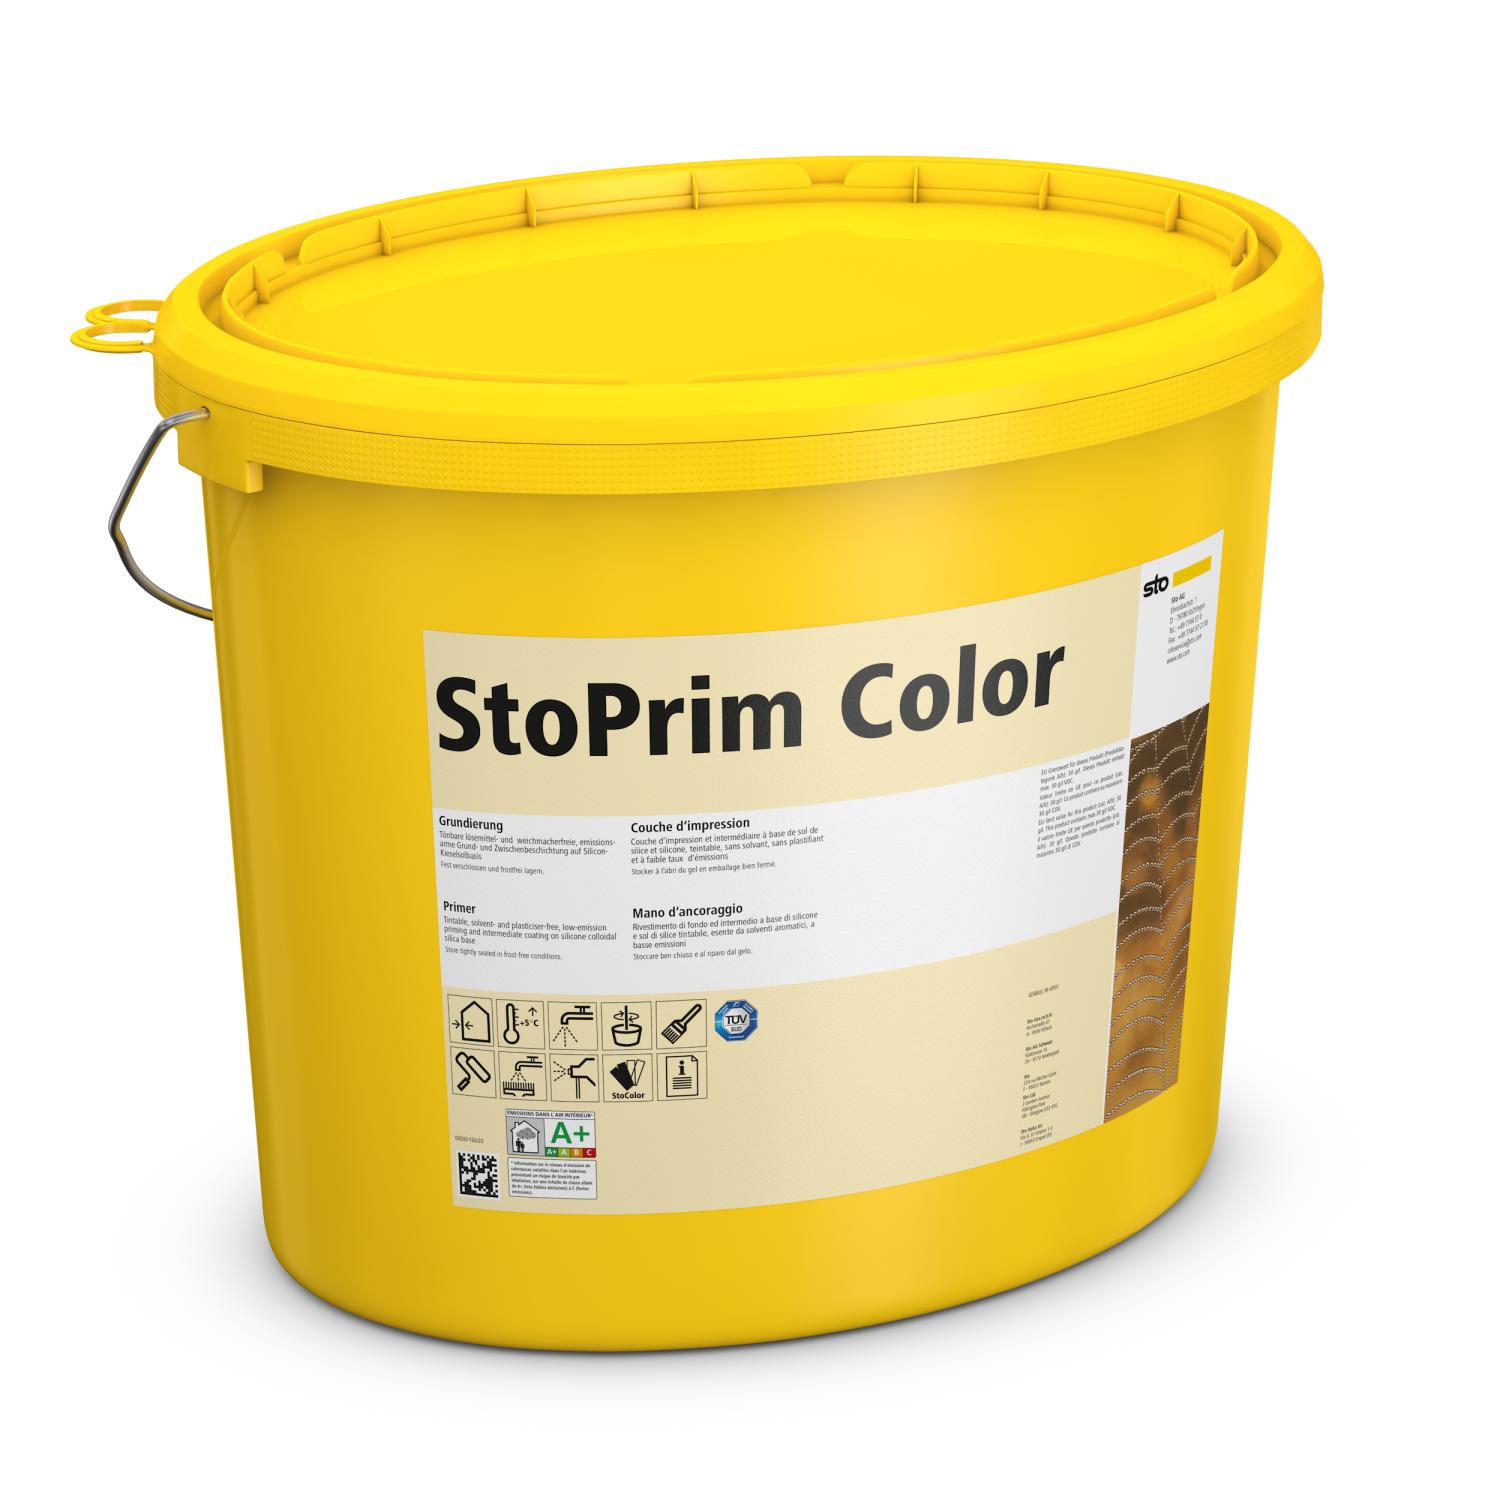 StoPrim Color getönt - 5 l Eimer